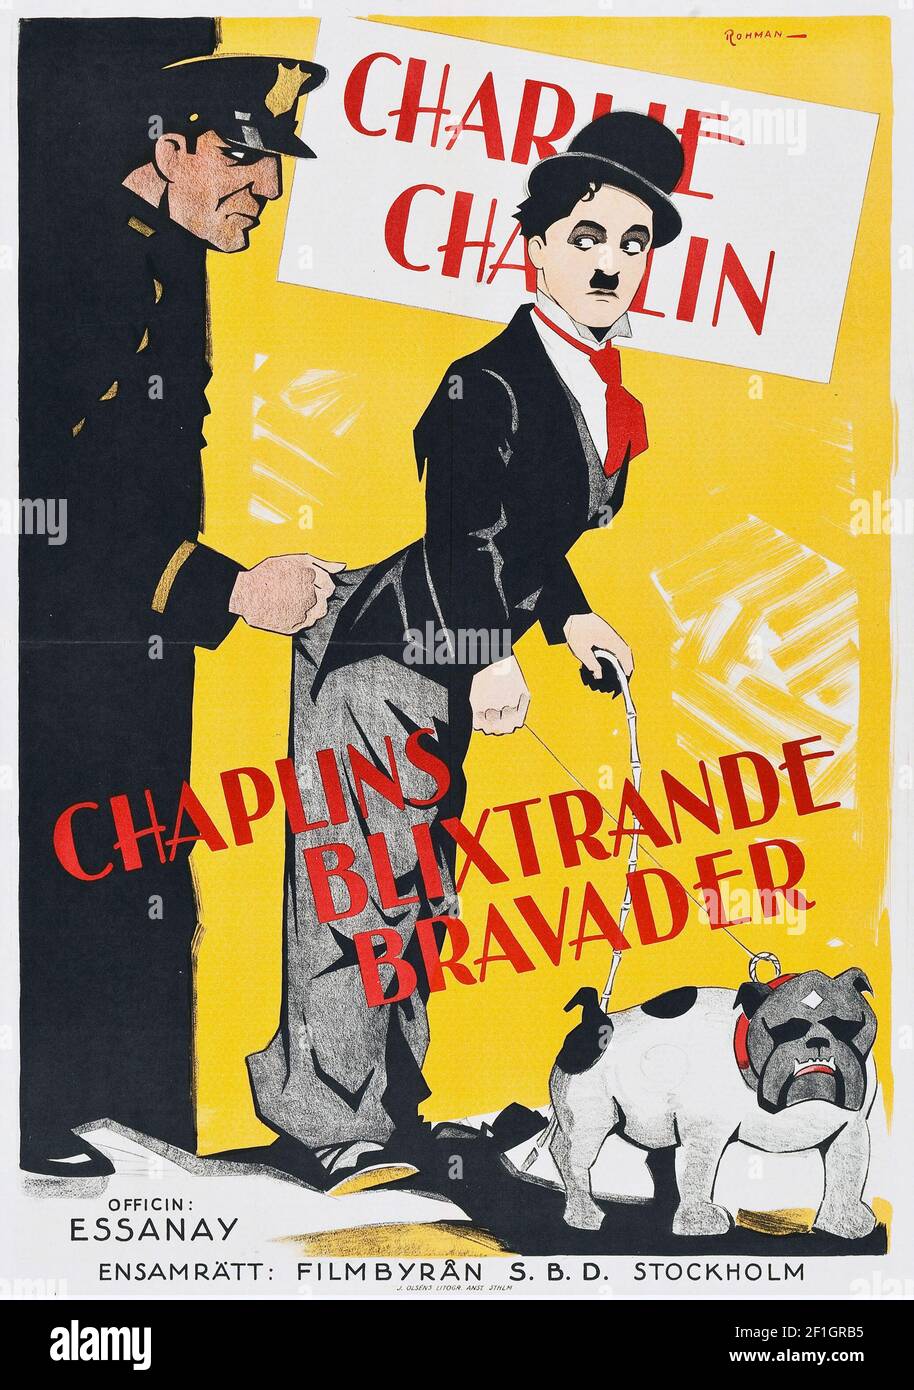 Charlie Chaplin Blixtrande Bravader (The Tramp) svensk / schwedisches Filmposter 1915 Stockfoto